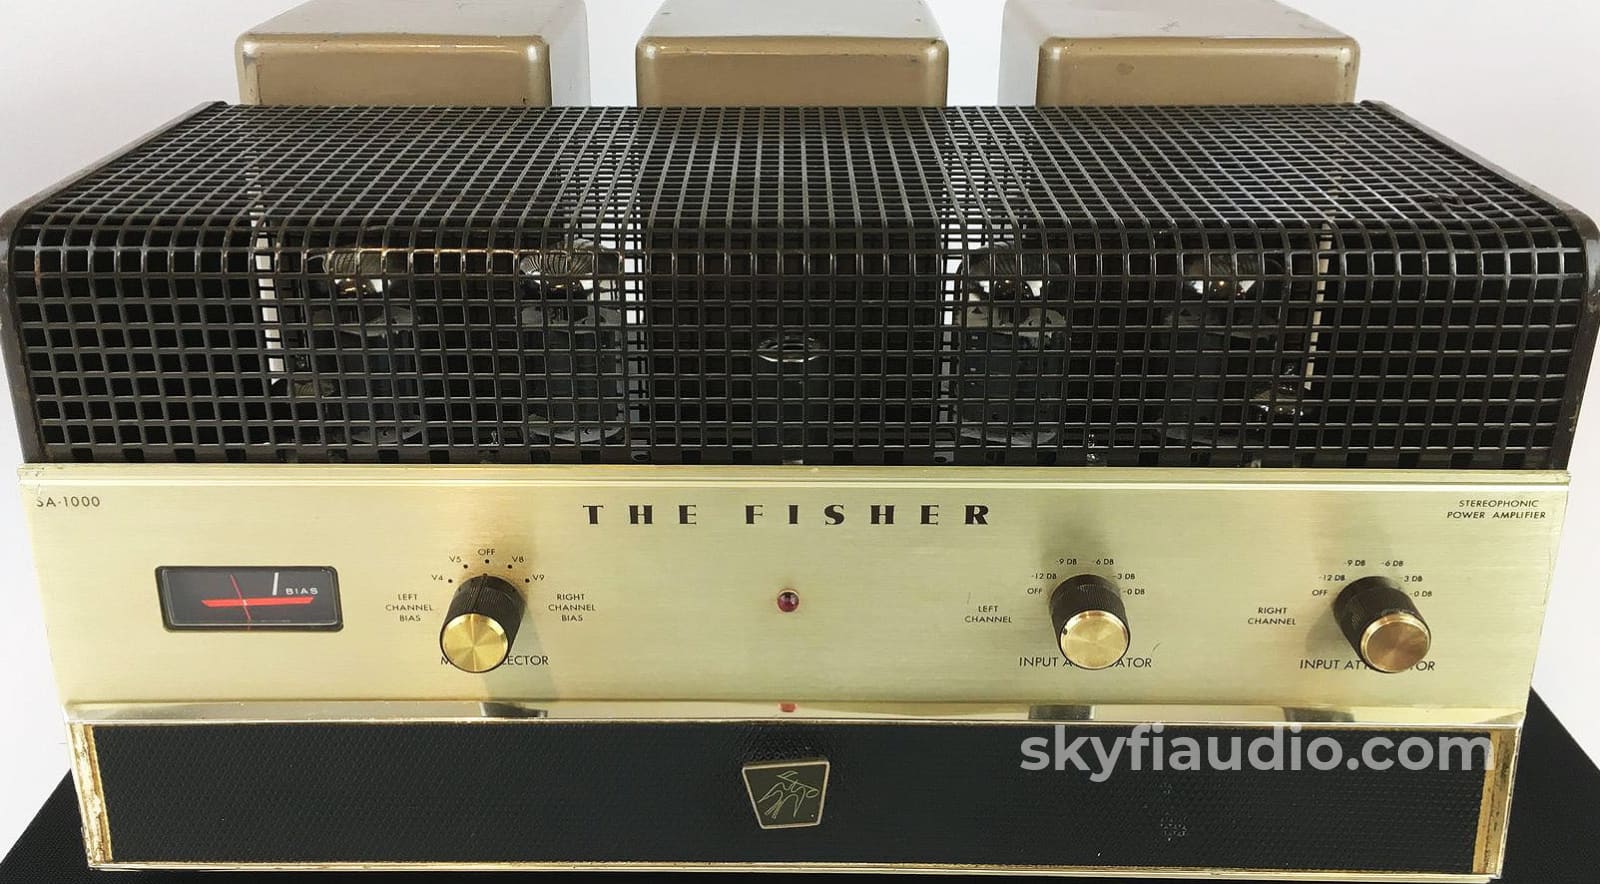 Fisher Sa-1000 Legendary Tube Amplifier